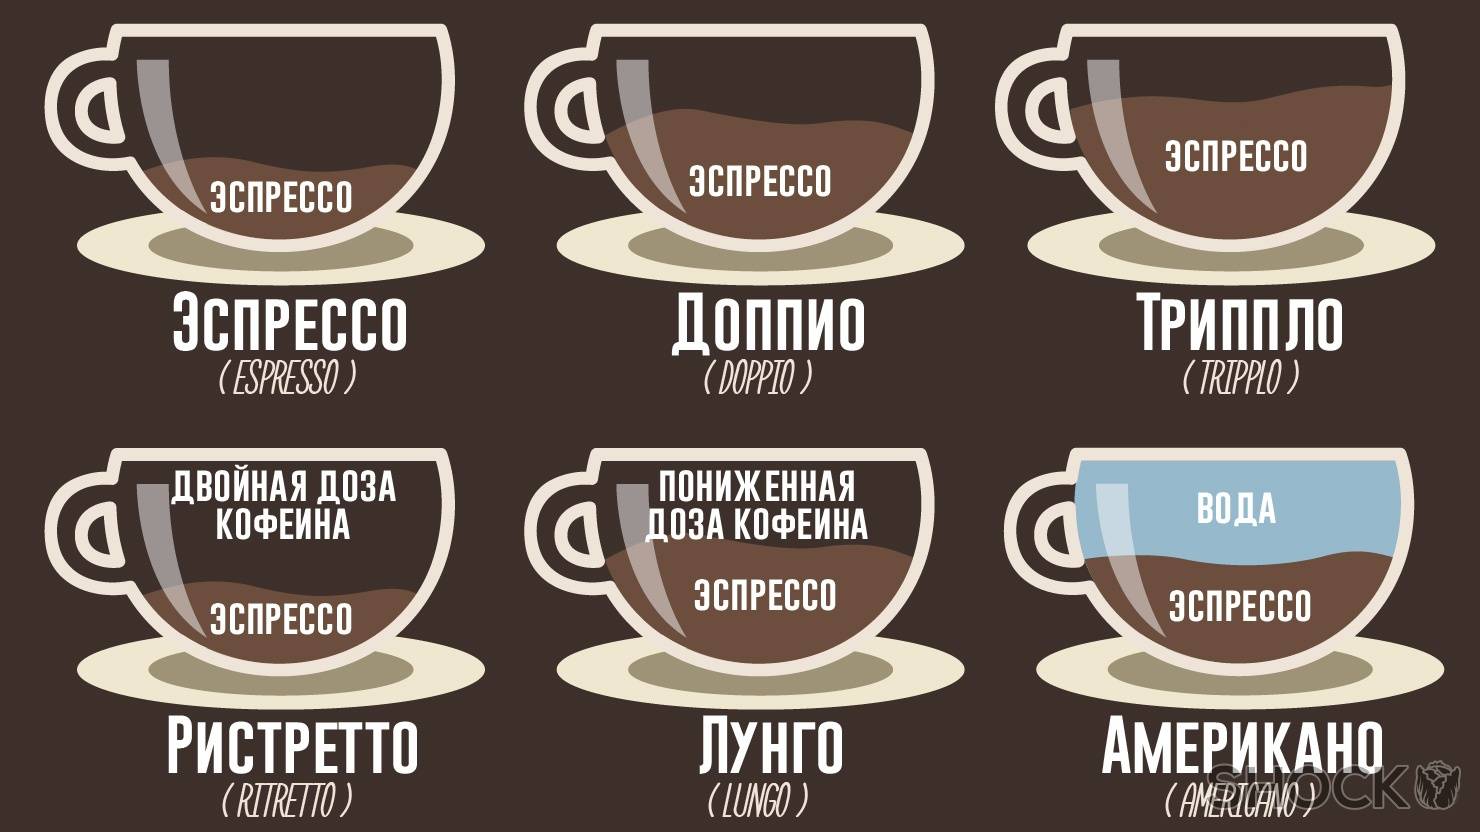 Кофе американо: рецепты, состав, калорийность